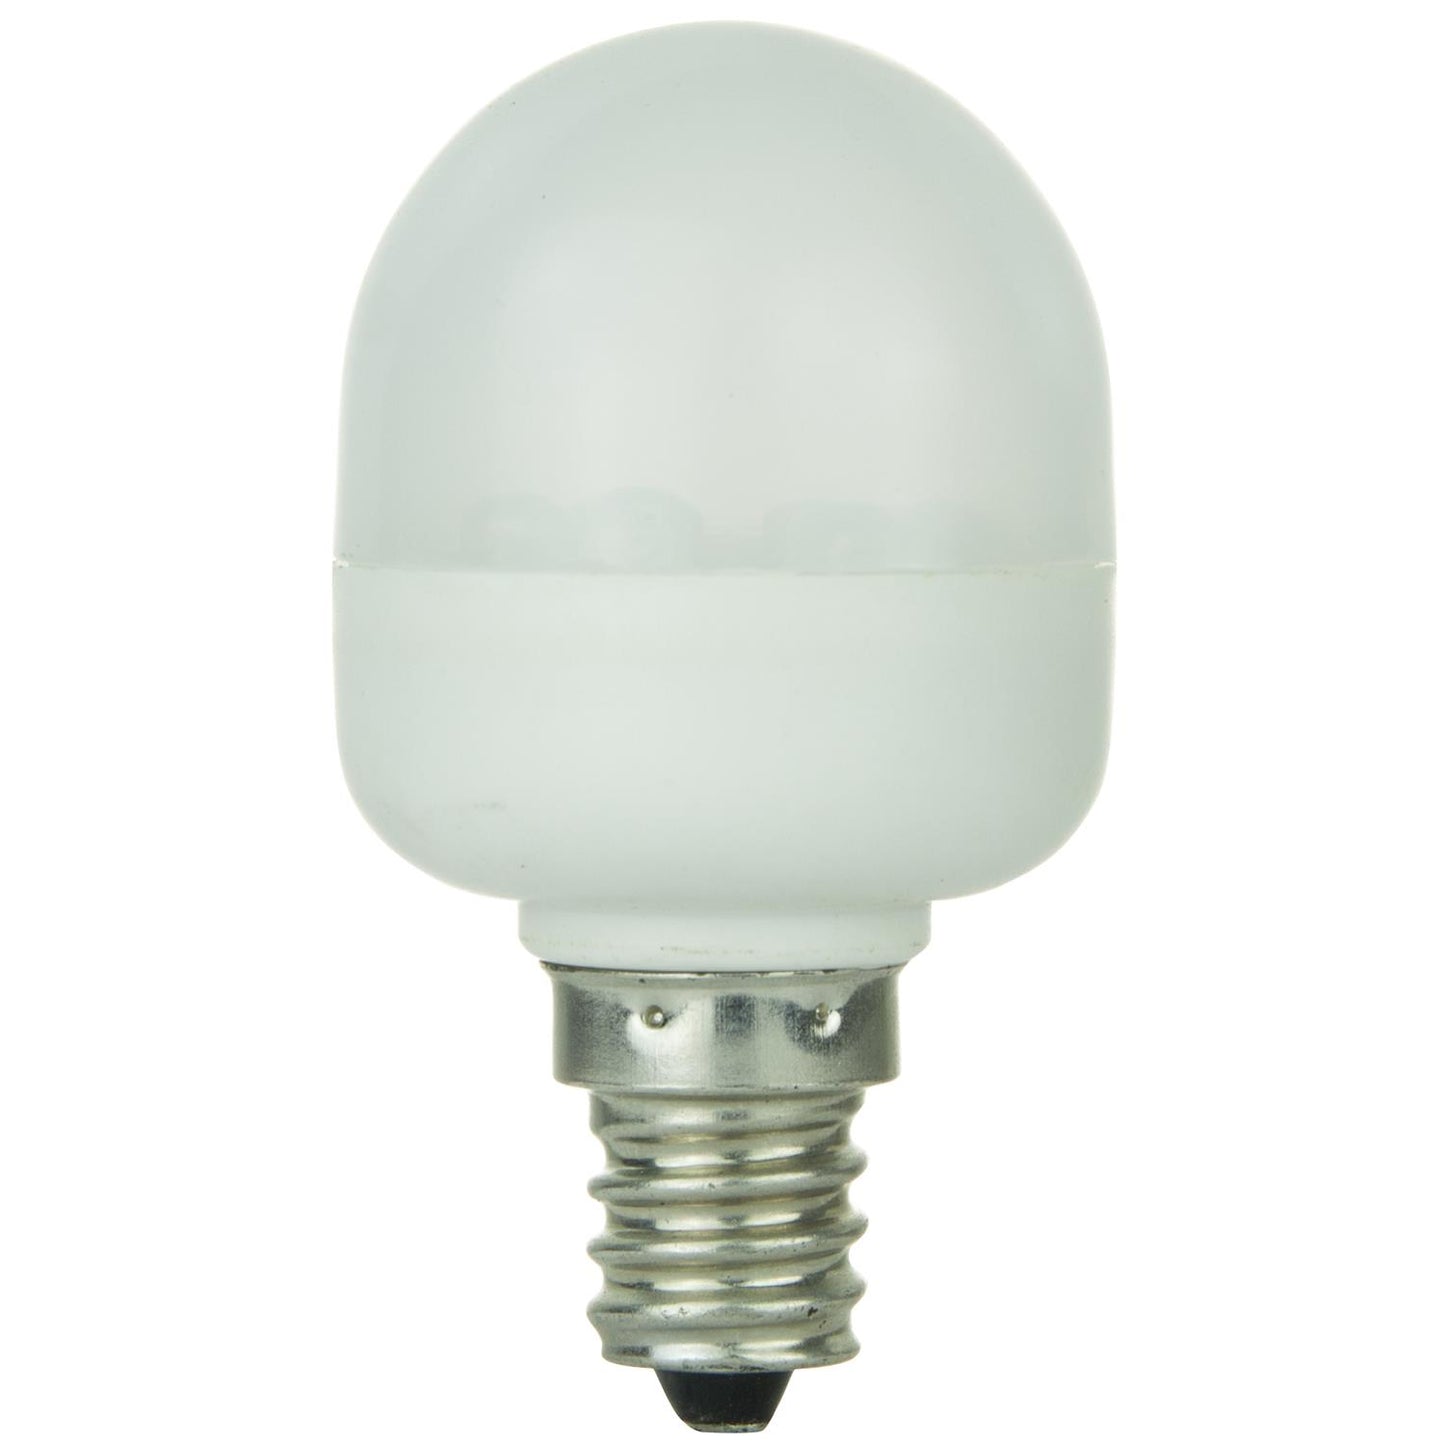 Sunlite T10 Tubular Indicator, Candelabra Base Light Bulb, Green